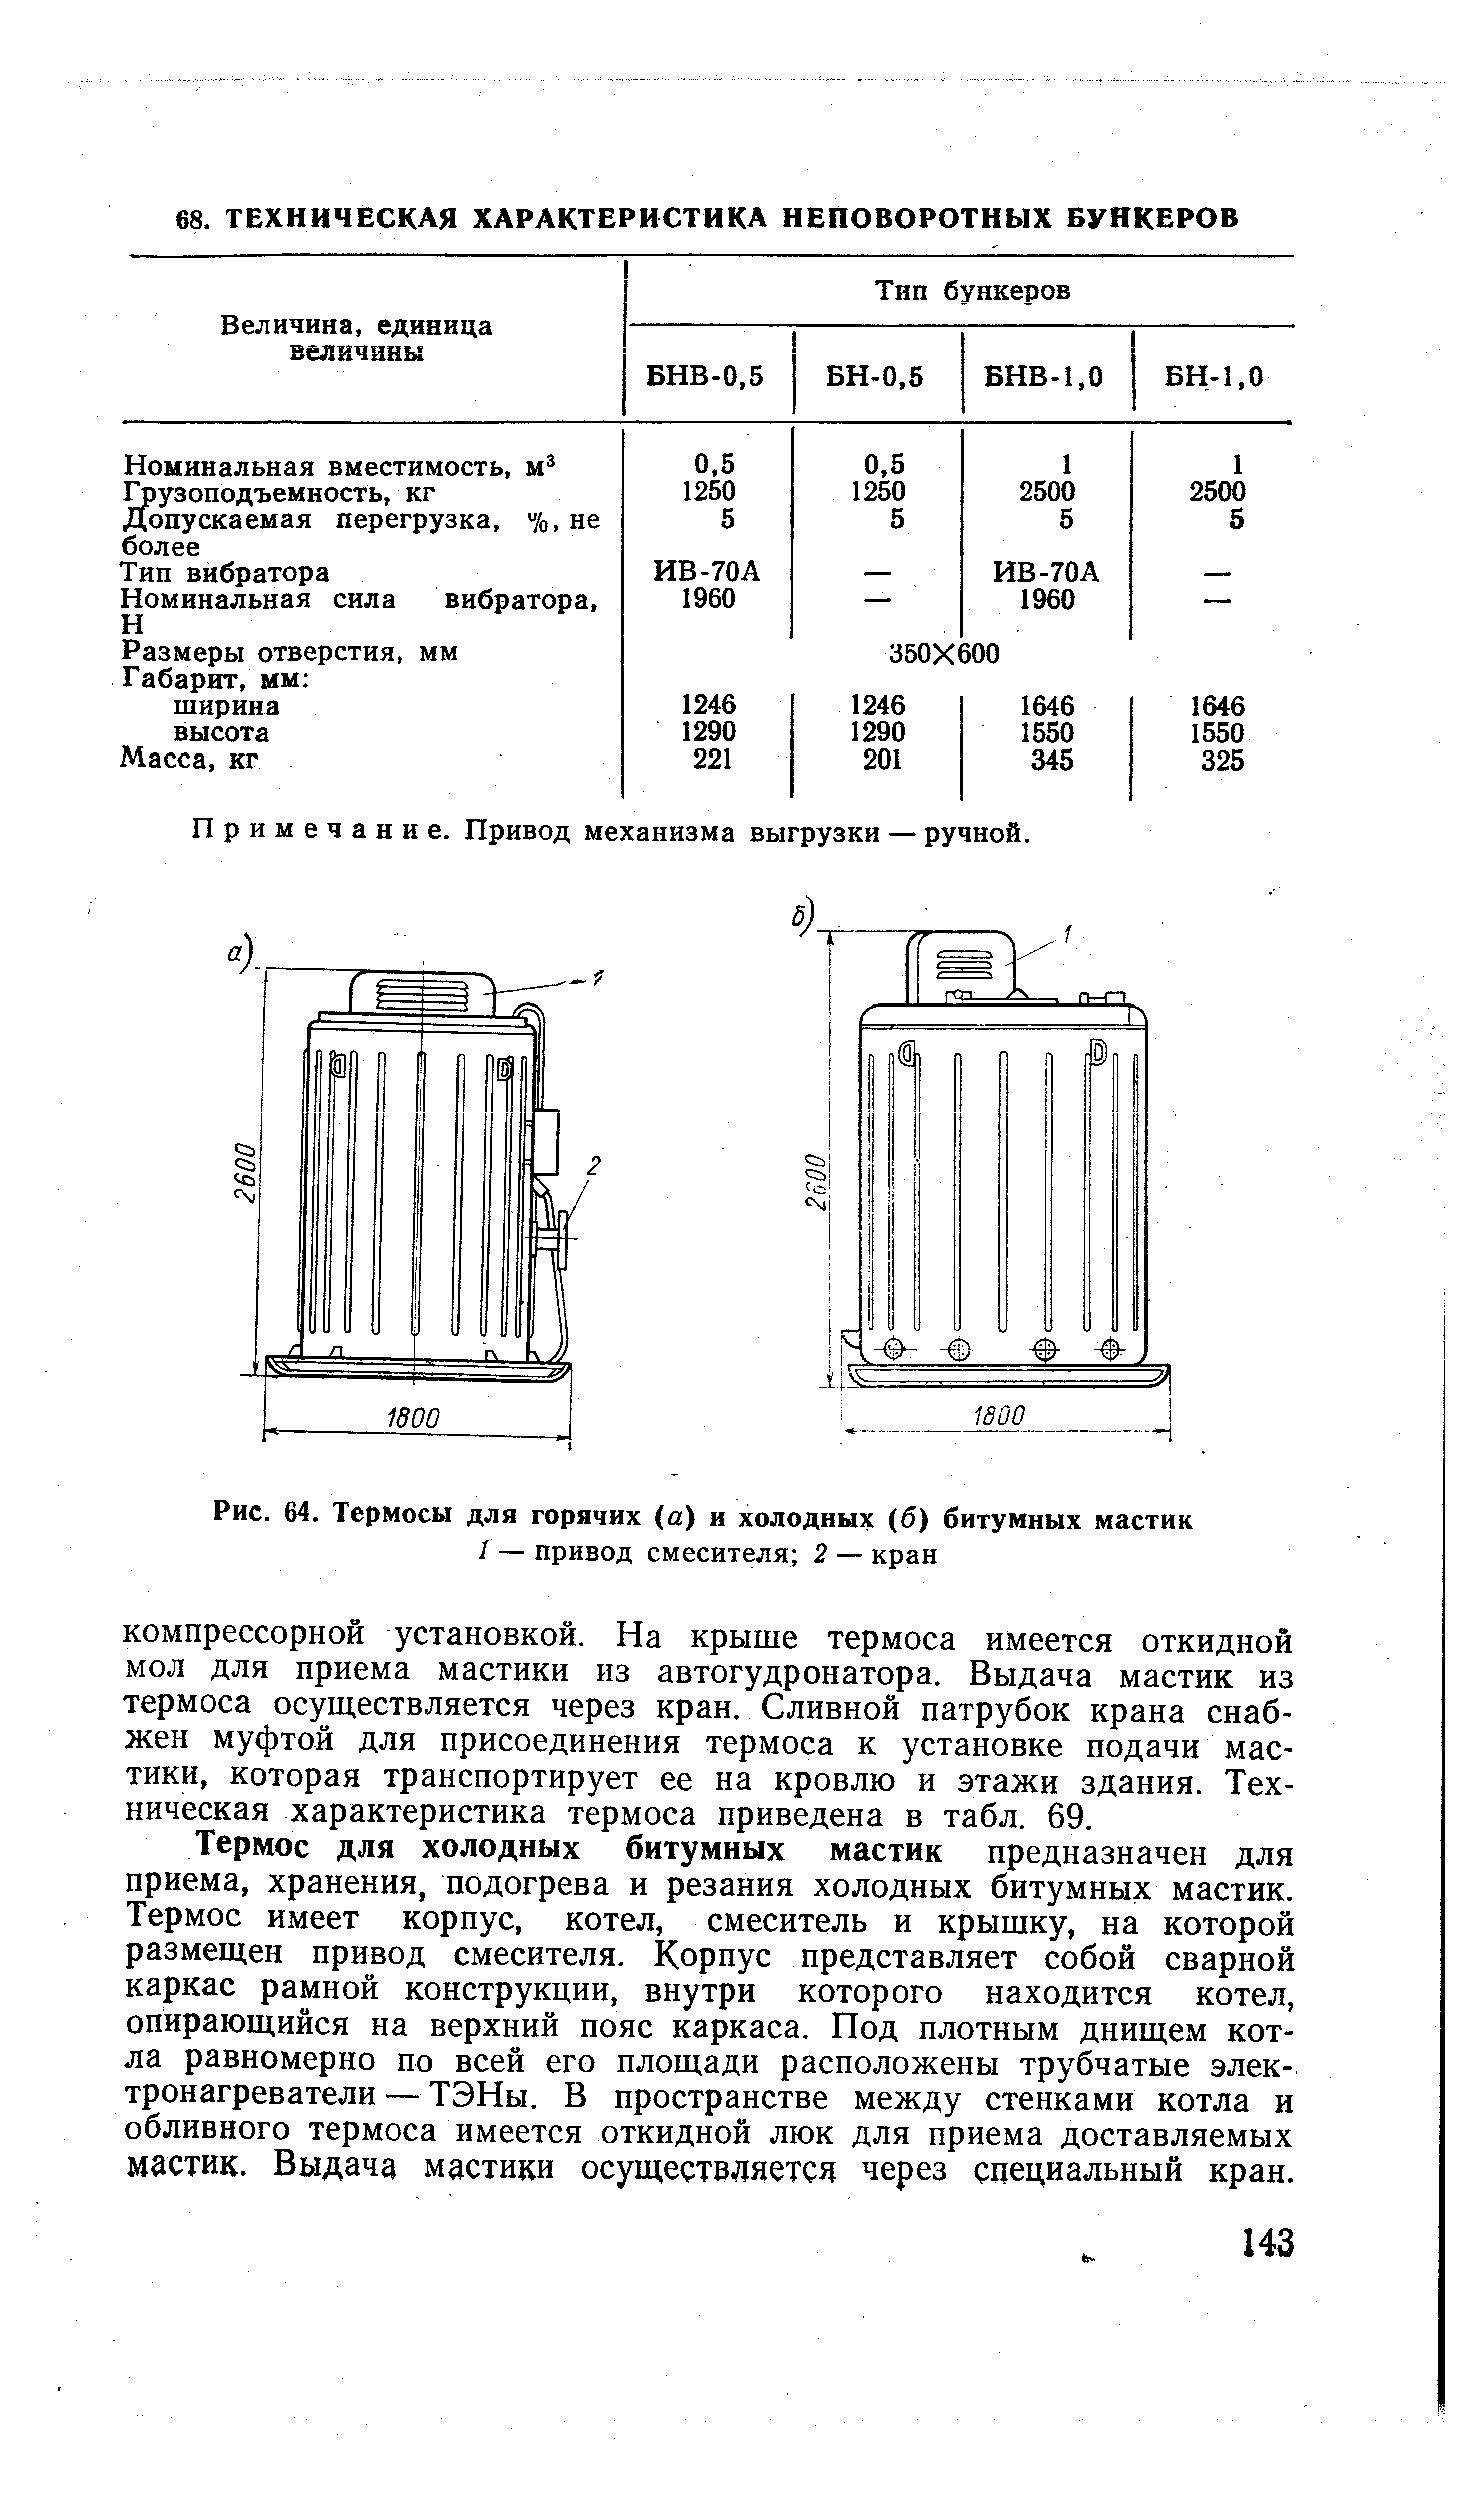 Рис. 64. Термосы для горячих (а) и холодных (б) битумных мастик
